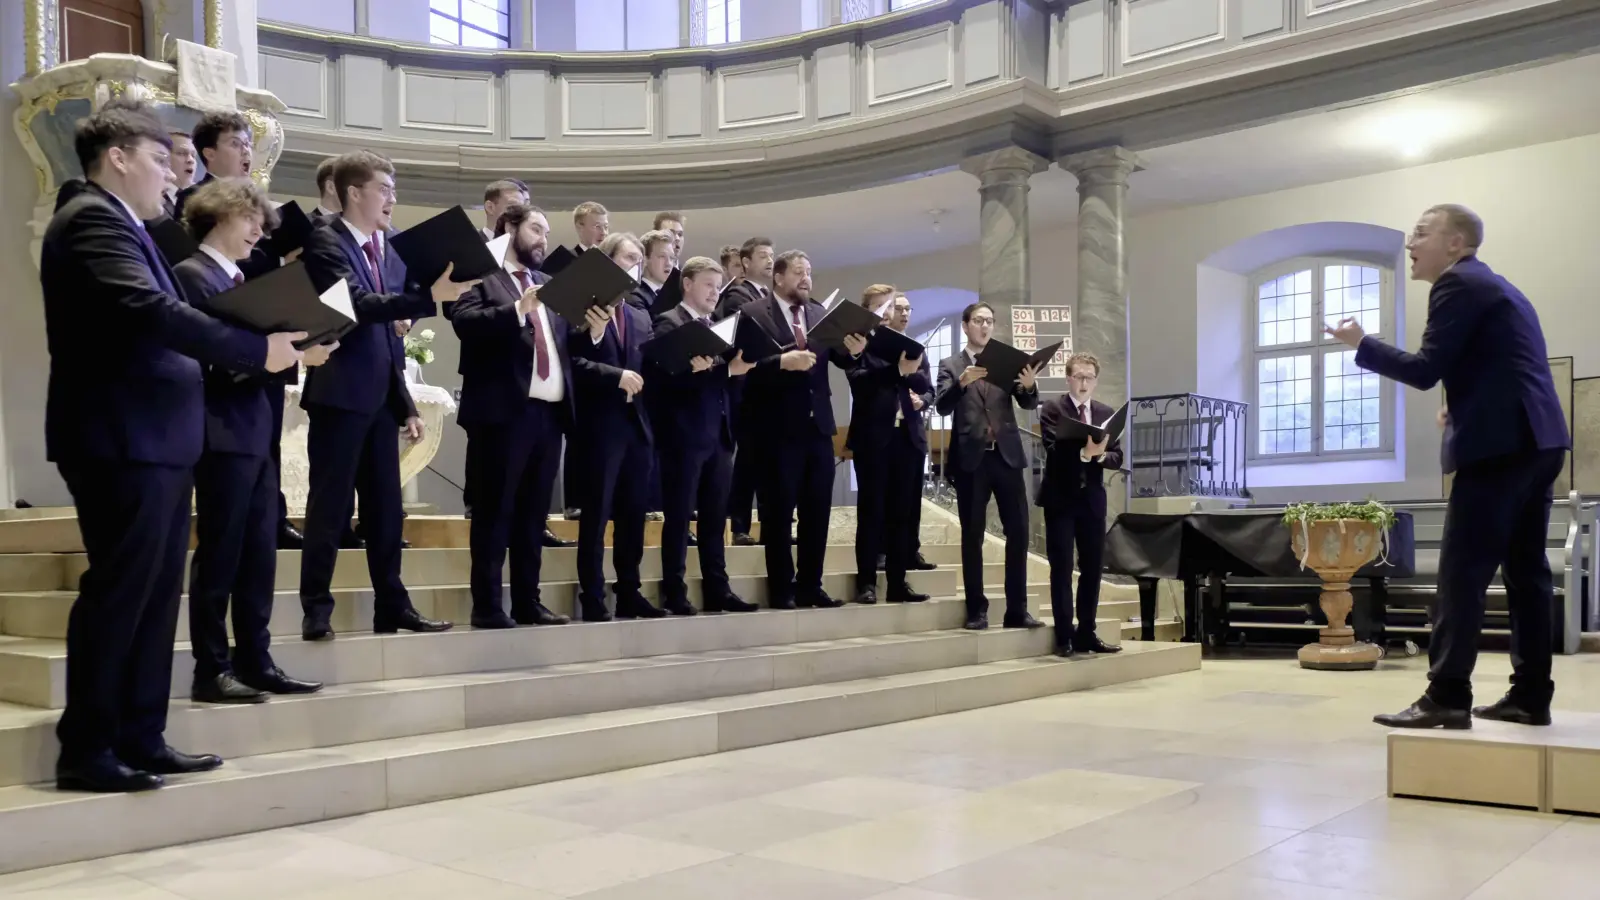 Mehrfach preisgekröntes Ensemble: der Männerchor von Sonat Vox unter der Leitung von Justus Merkel. (Foto: Martin Stumpf)